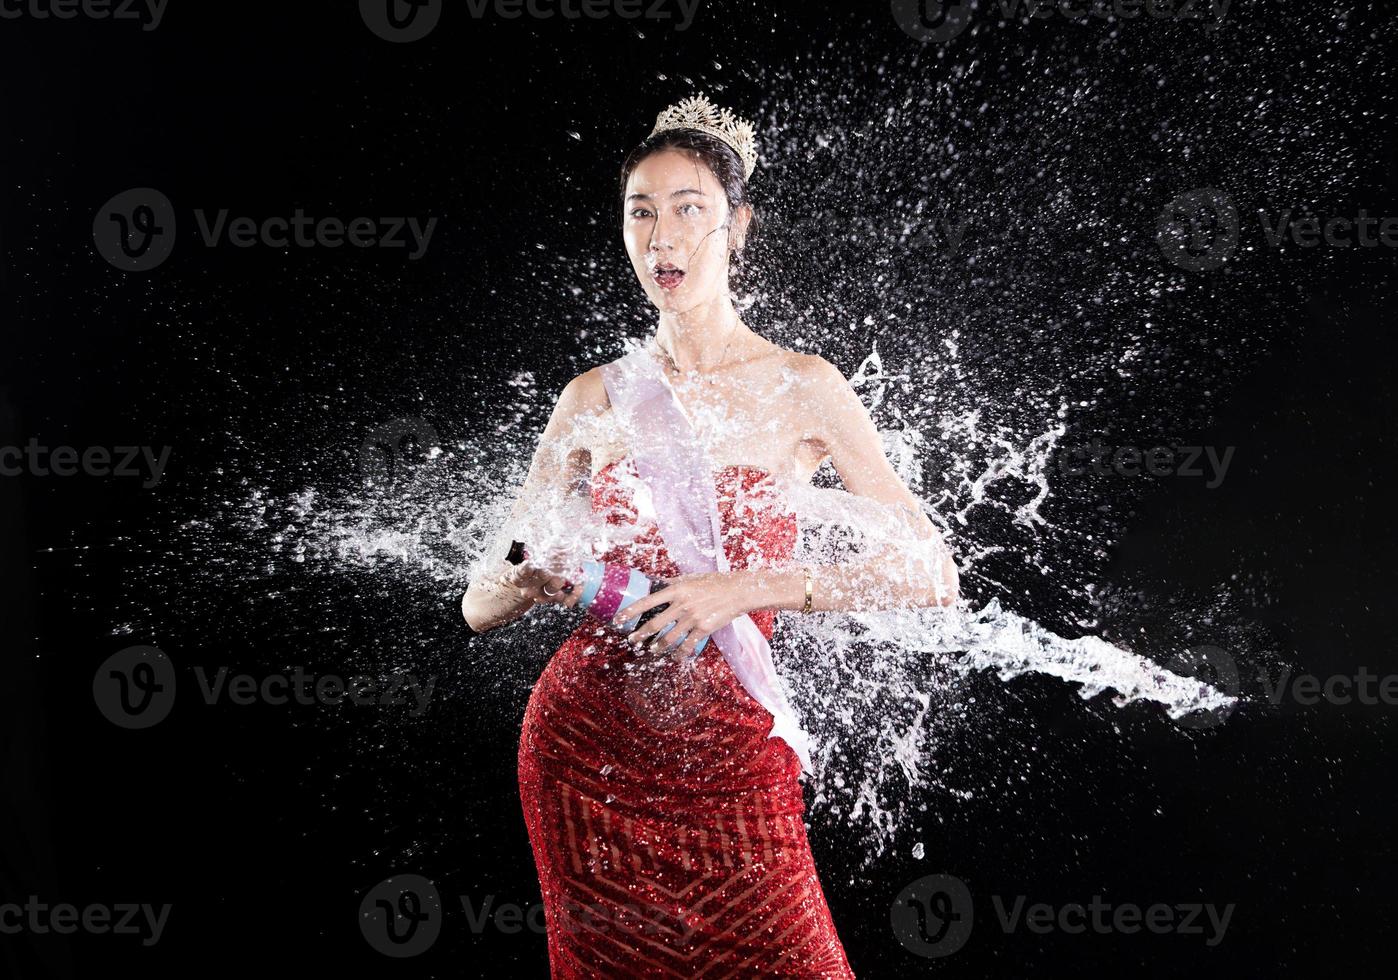 éclaboussures d'eau à l'arrière du concours de concours de beauté Miss avec couronne de diamants en gouttelettes photo